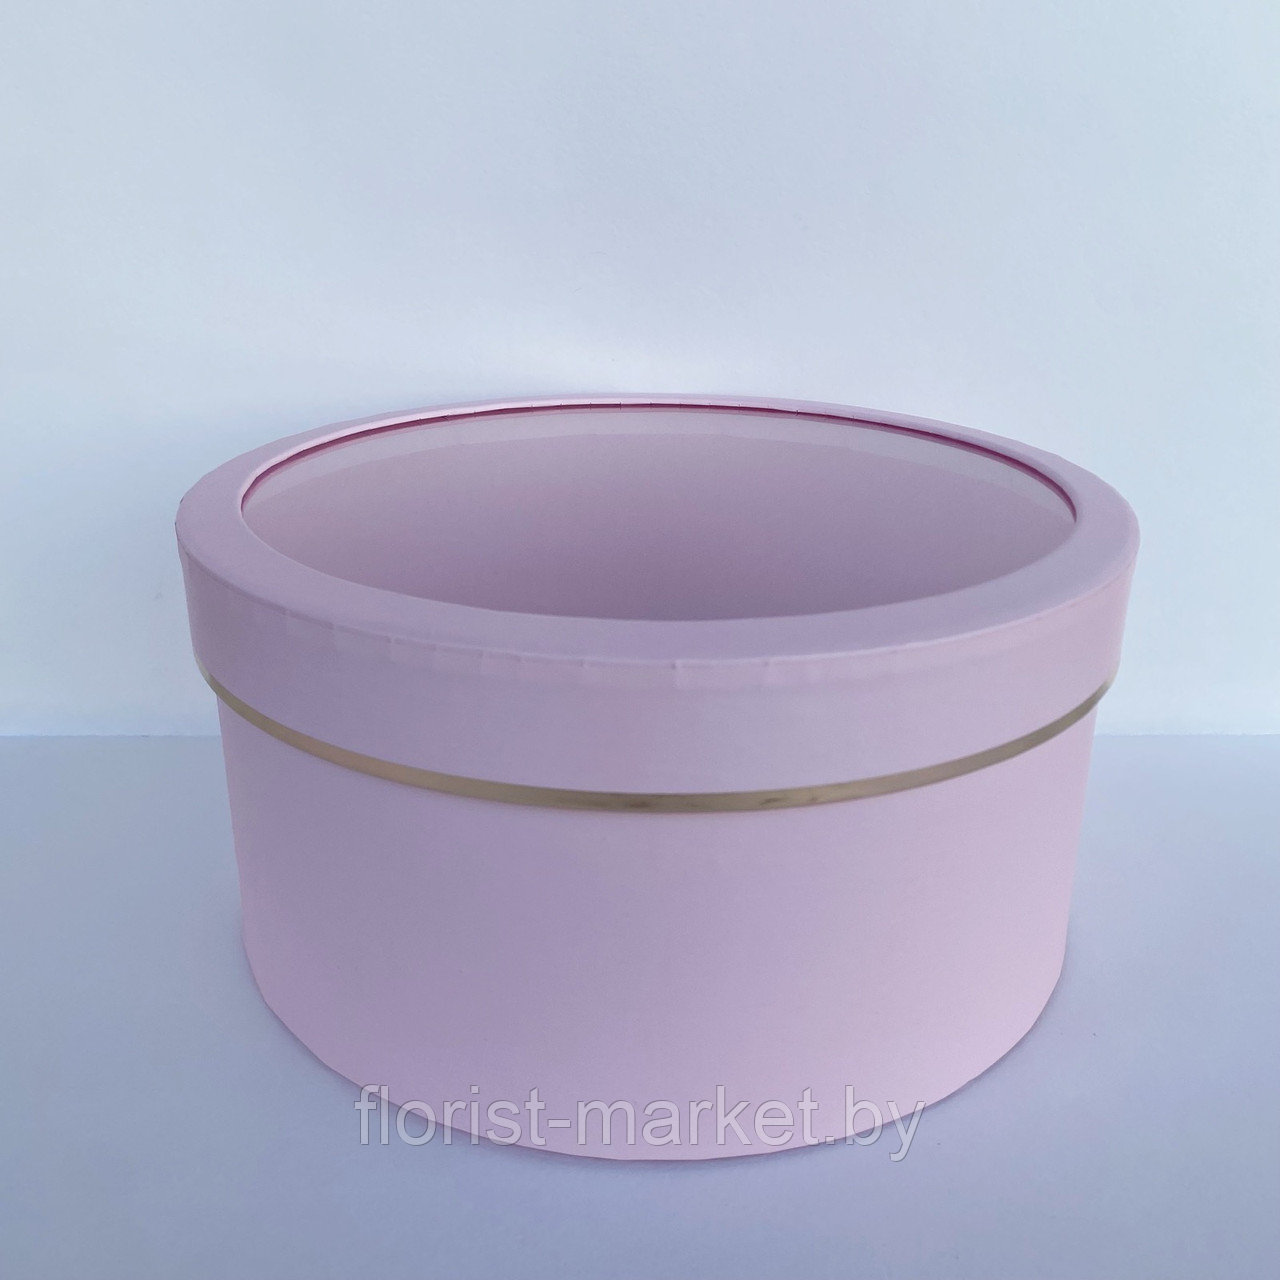 Коробка с окошком, 23*11,5 см, розовый